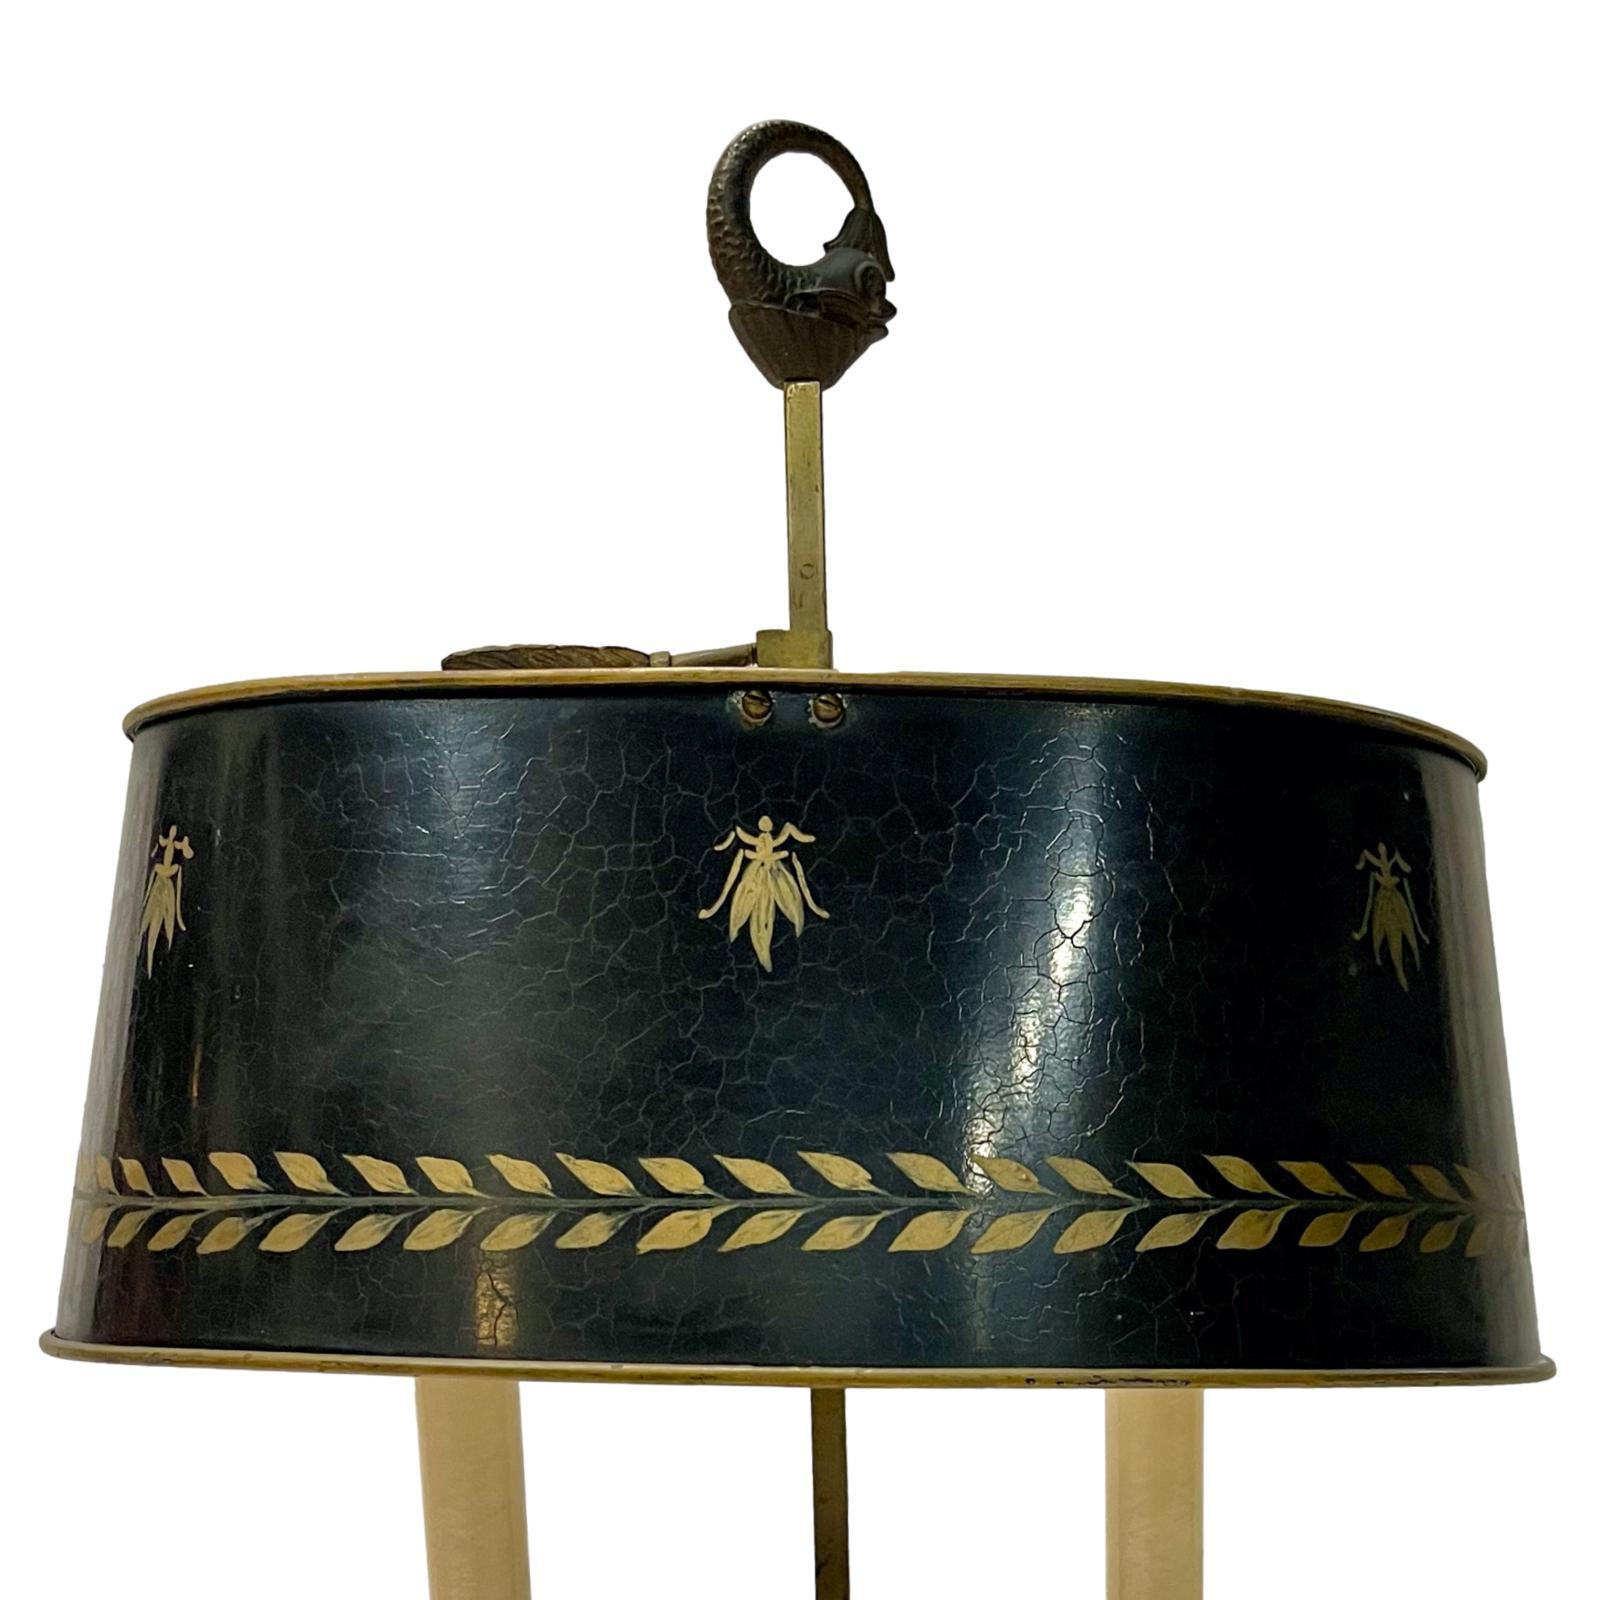 Lampe de bureau française en bronze, datant des années 1950, avec dauphins sur le corps.

Mesures :
Hauteur : 20.5